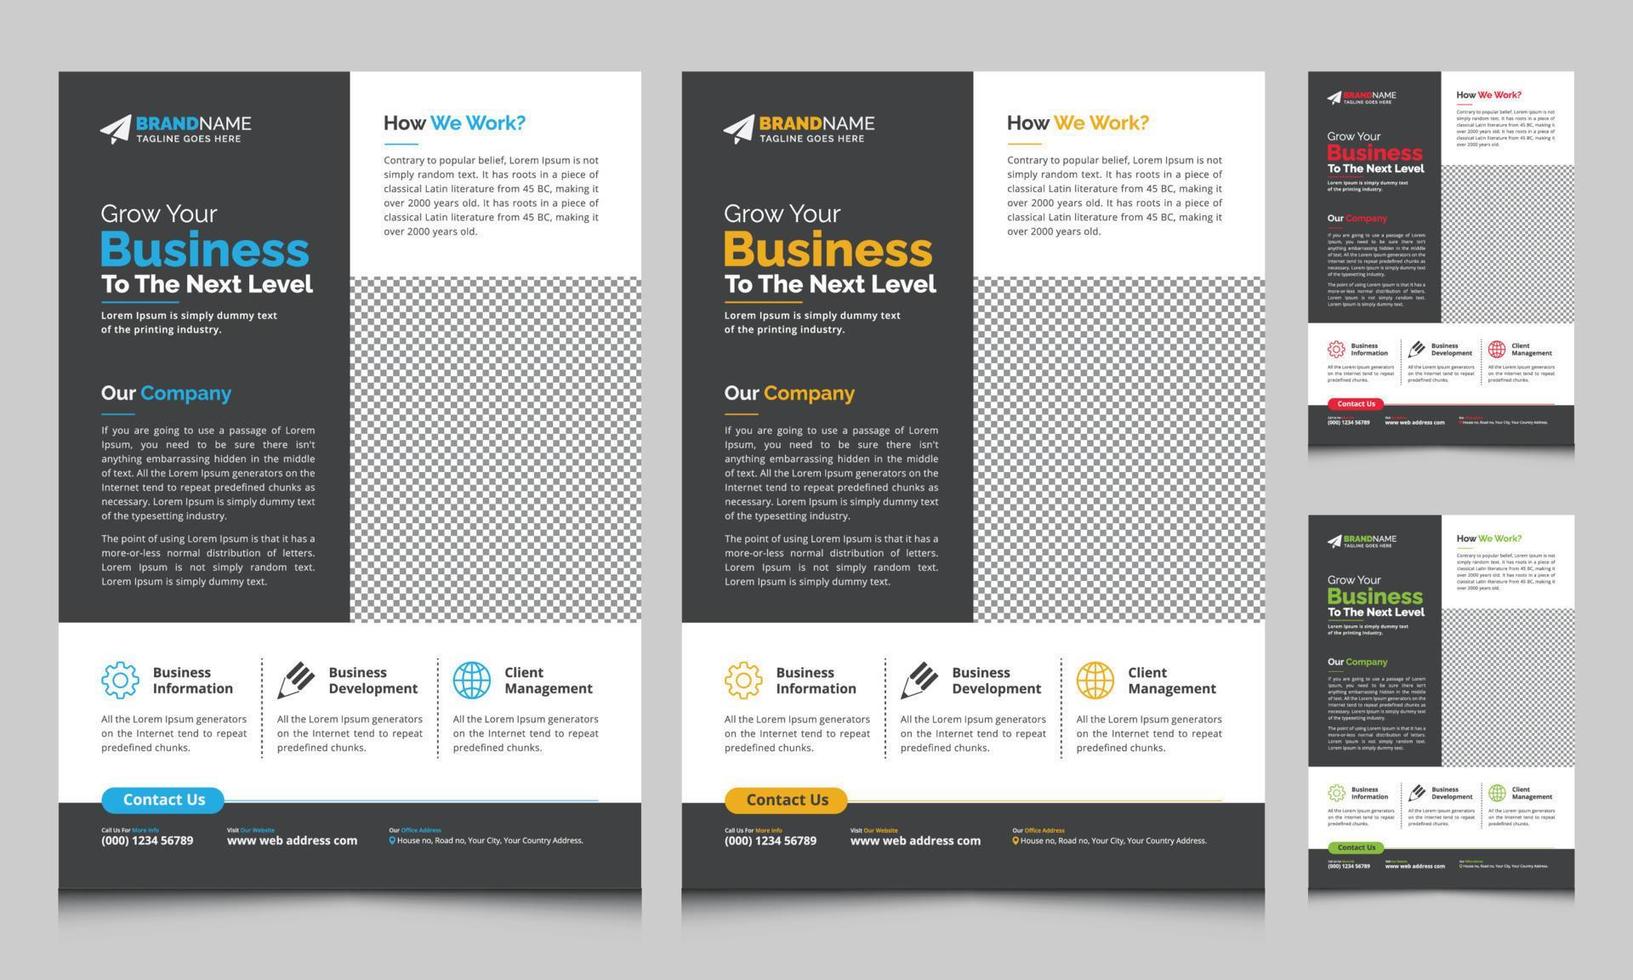 Modernes Corporate Business Flyer Broschüren-Vorlagendesign, abstraktes Flyer-Broschüren-Cover-Vektordesign, Jahresbericht, Geschäftsvorschlag, Promotion, Werbung, Veröffentlichungslayout vektor